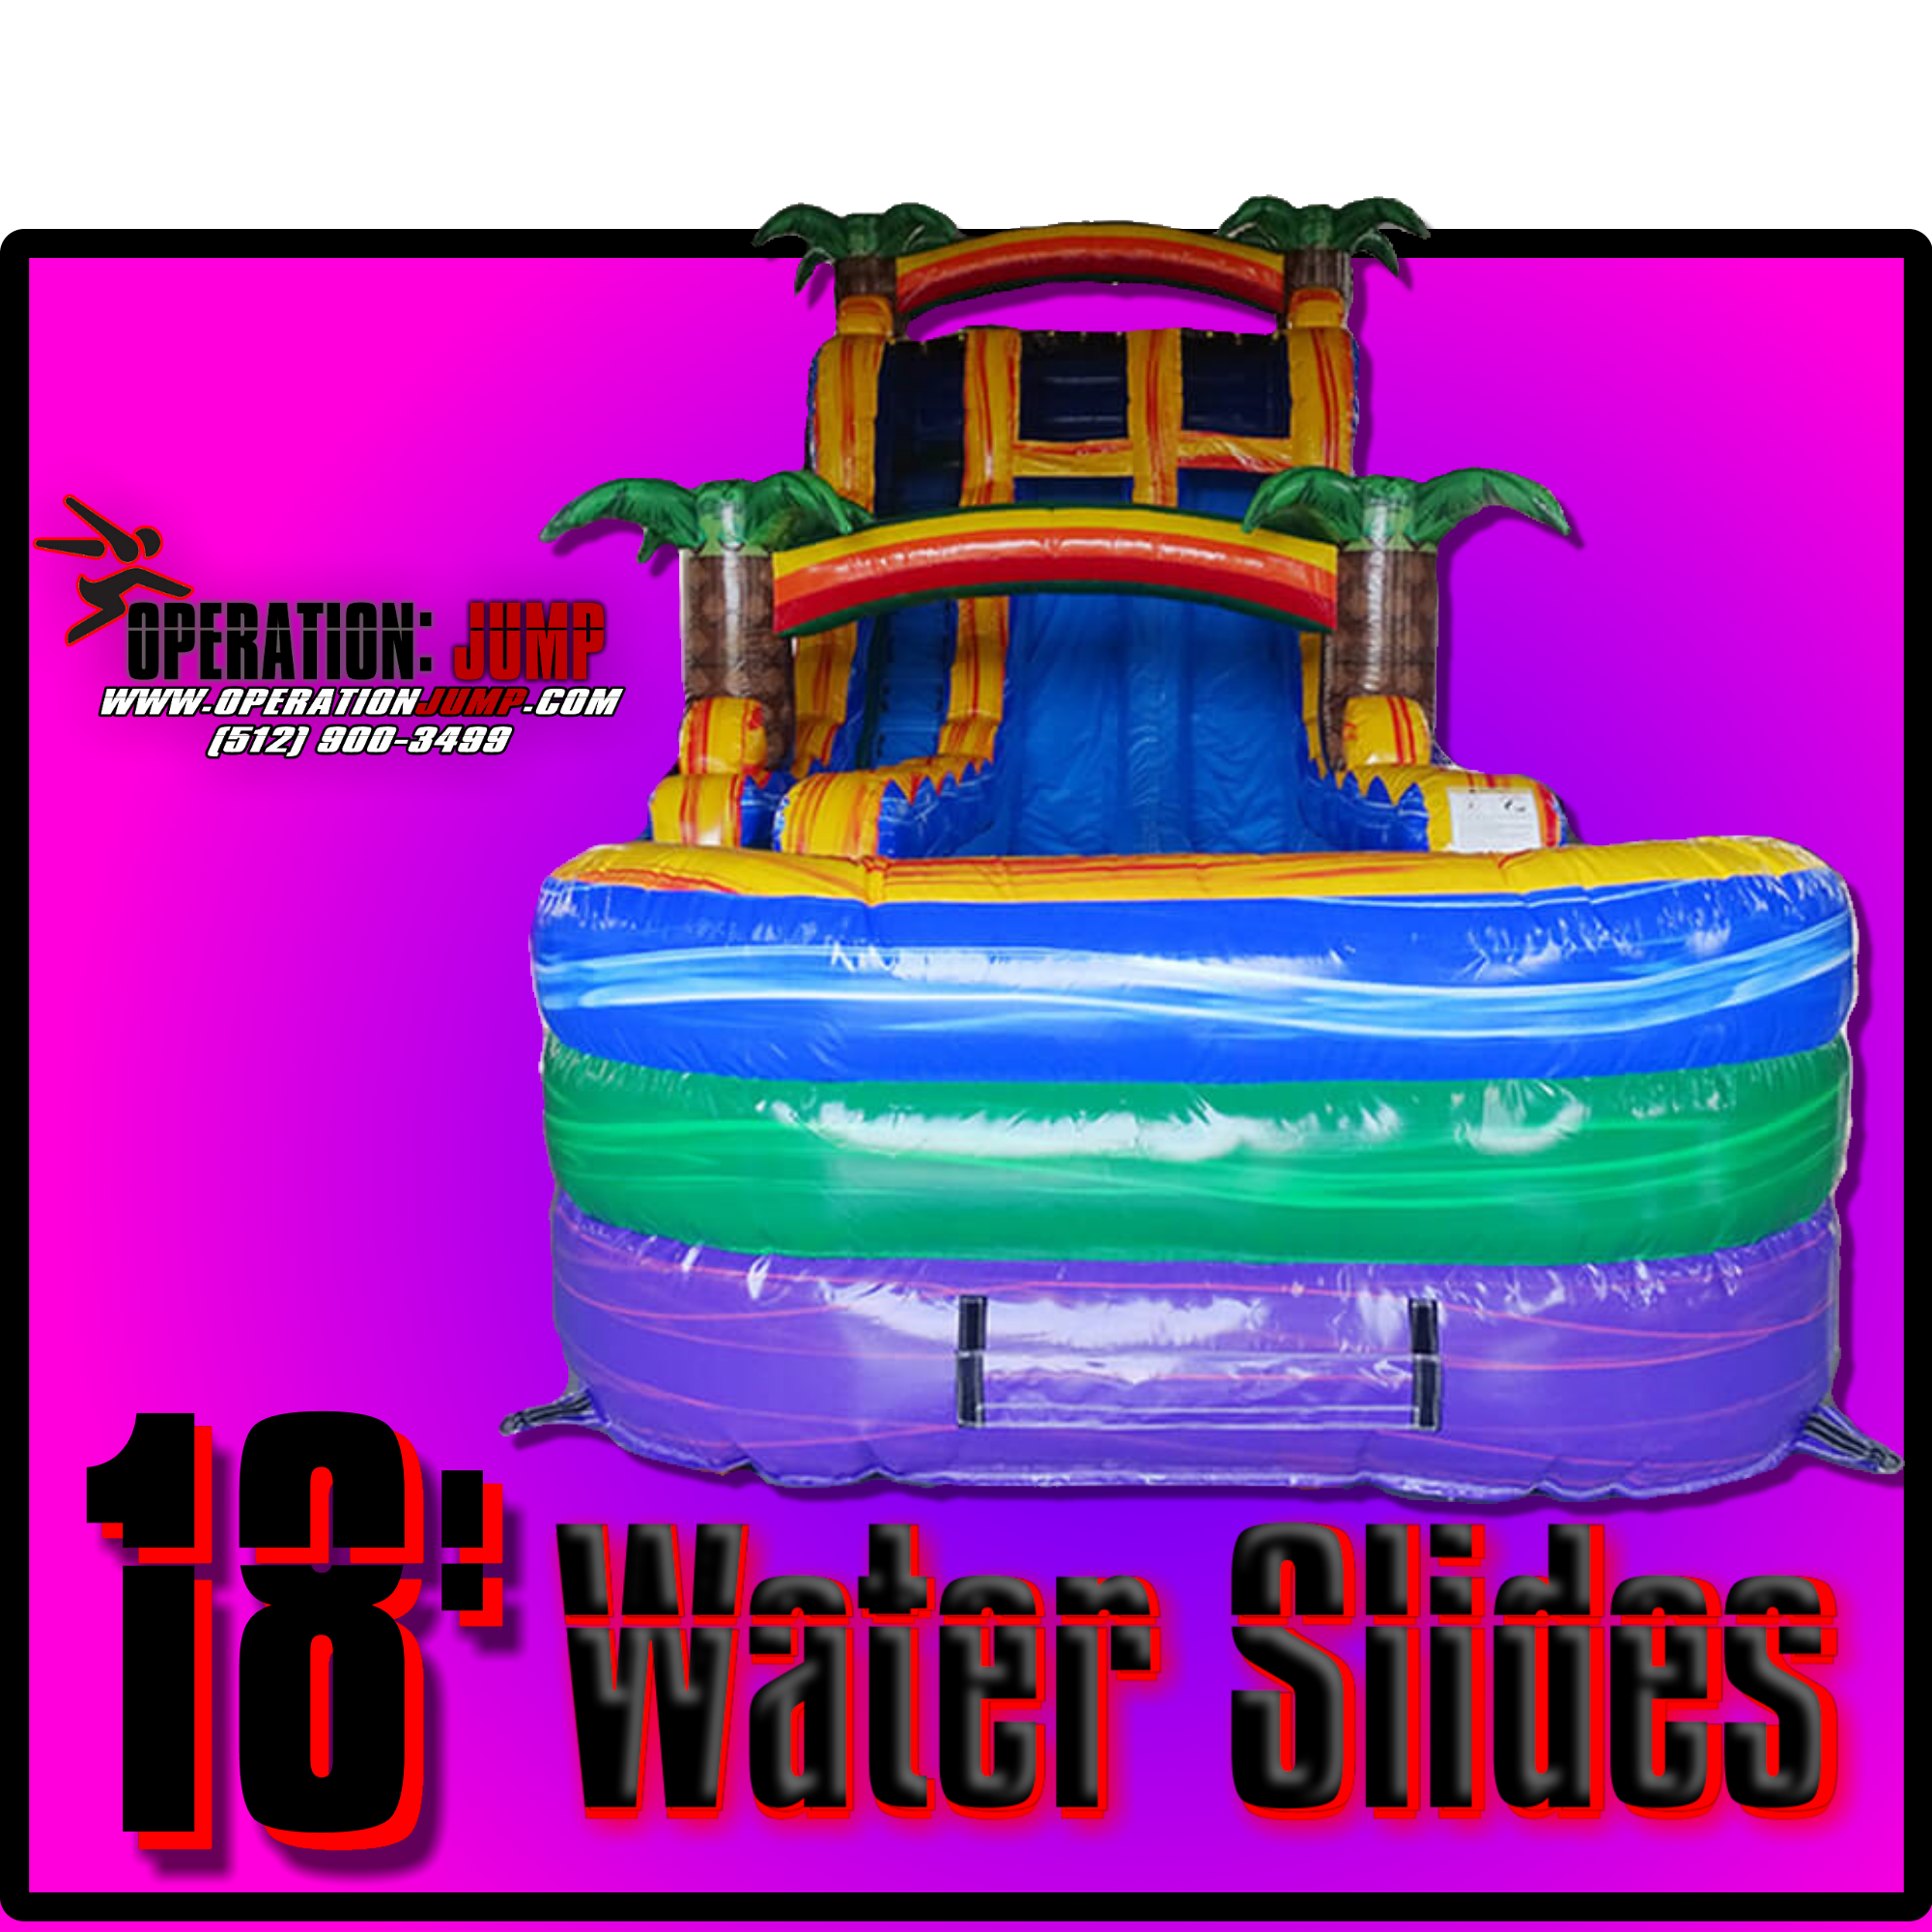 18 Foot Water Slide Rentals